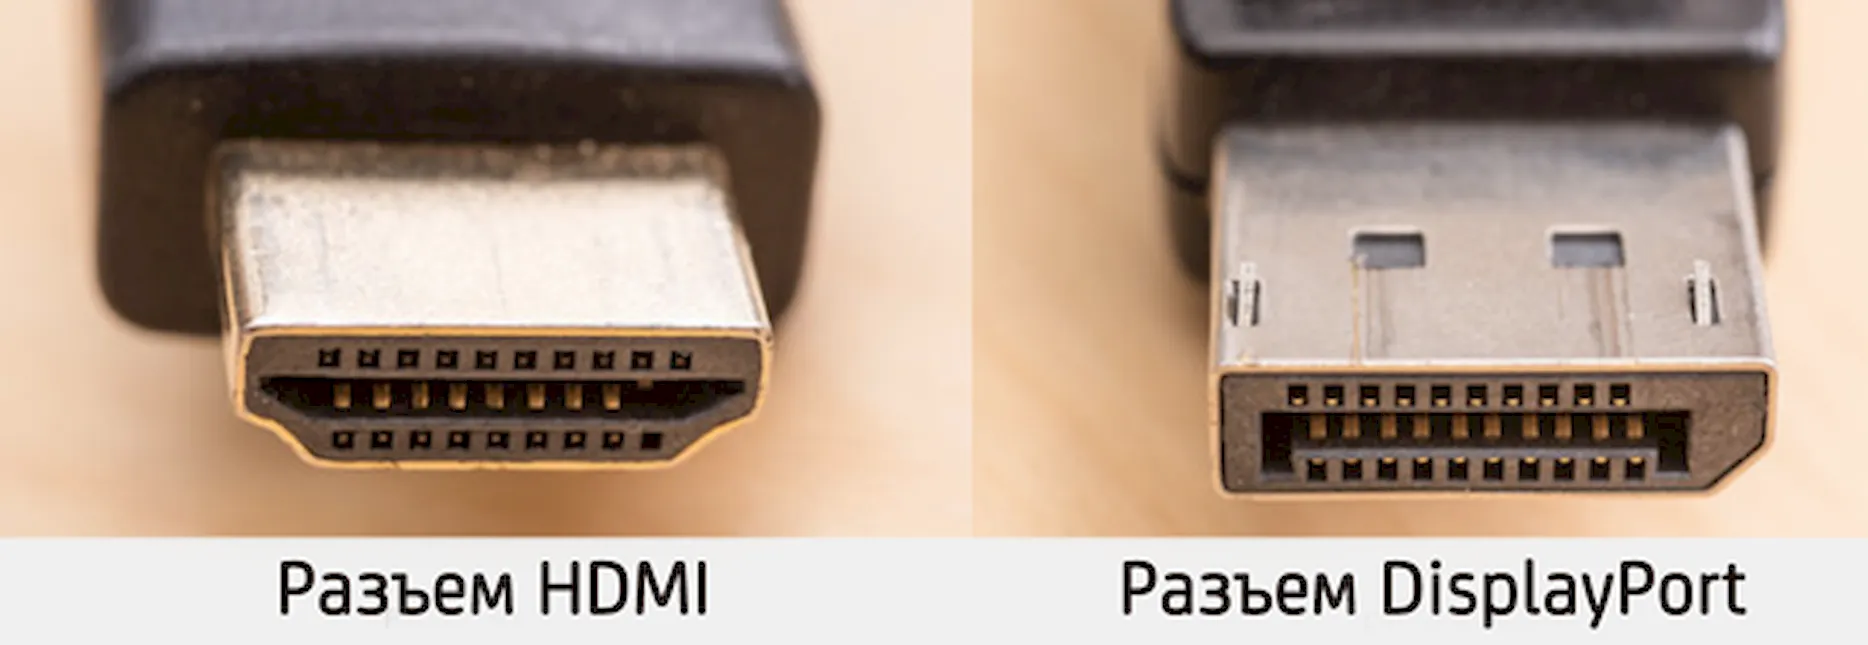 Внешний вид разъемов HDMI и DisplayPort